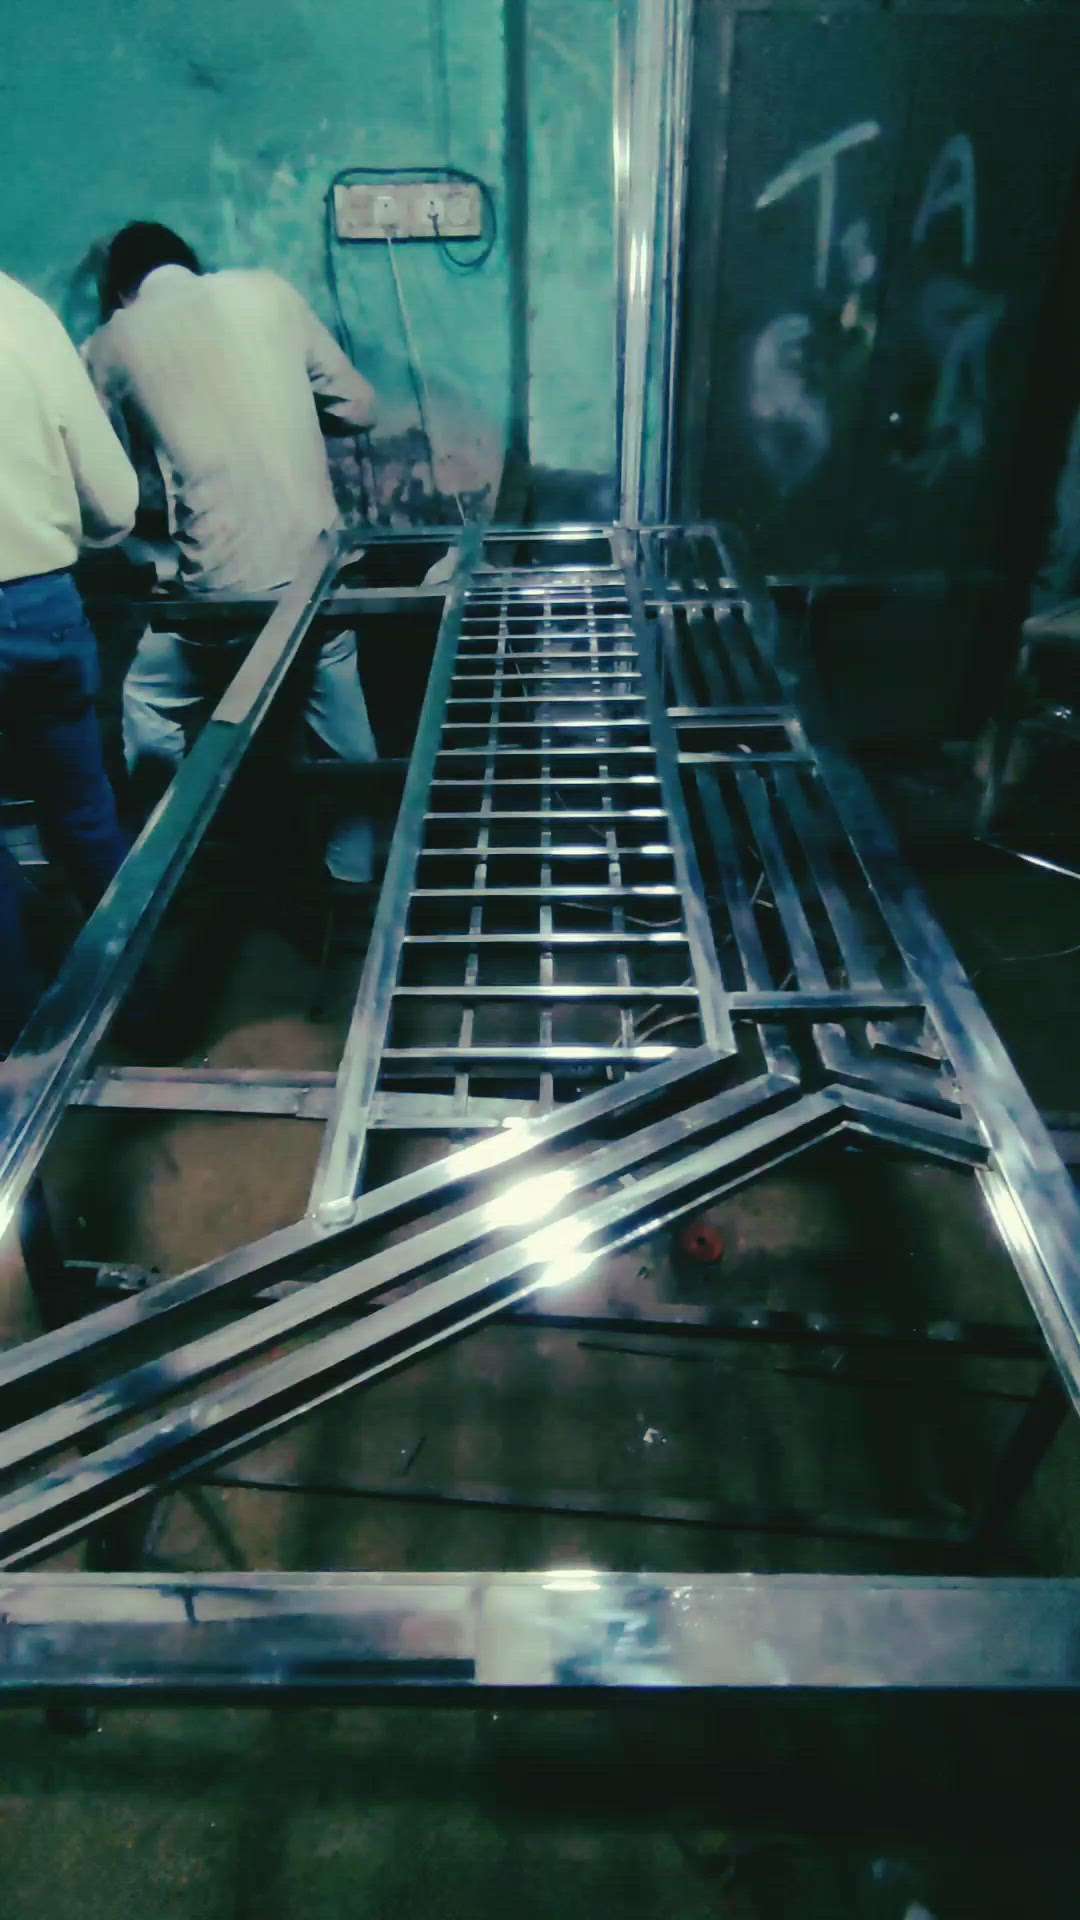 ss gate design single door safety doors Bismillah fabrication. .
requirement 👉 8285562500
.
.
 #koloviral  #kolopost  #koloapp  #Steeldoor  #steelwork  #steeldoordesigns  #steelgate  #bismillah